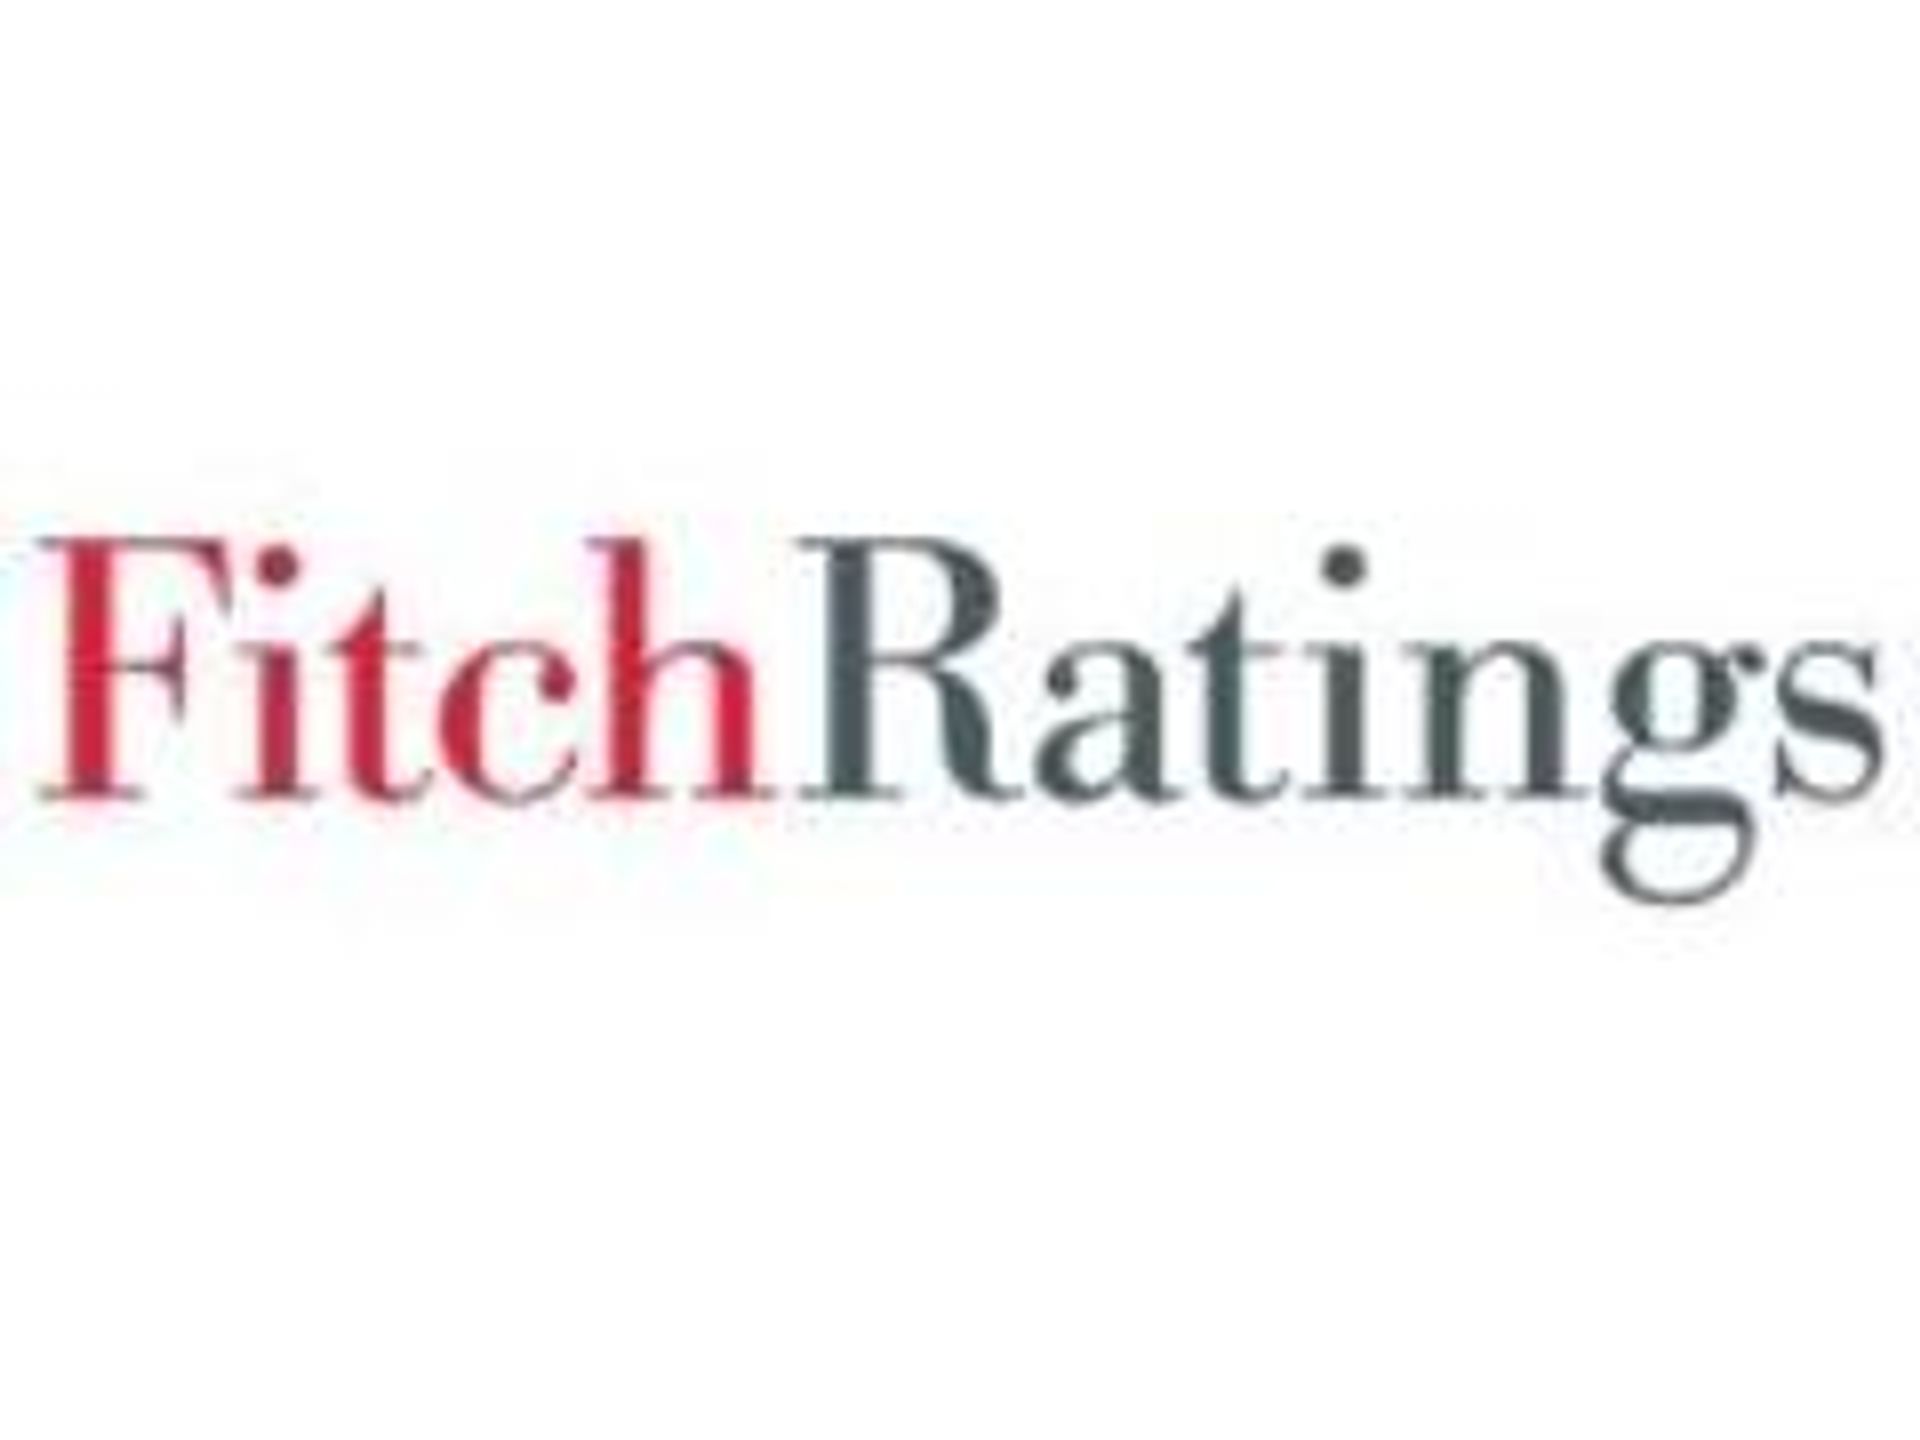  Gliwice w dobrej kondycji ekonomiczej - stwierdza agencja Fitch Ratings